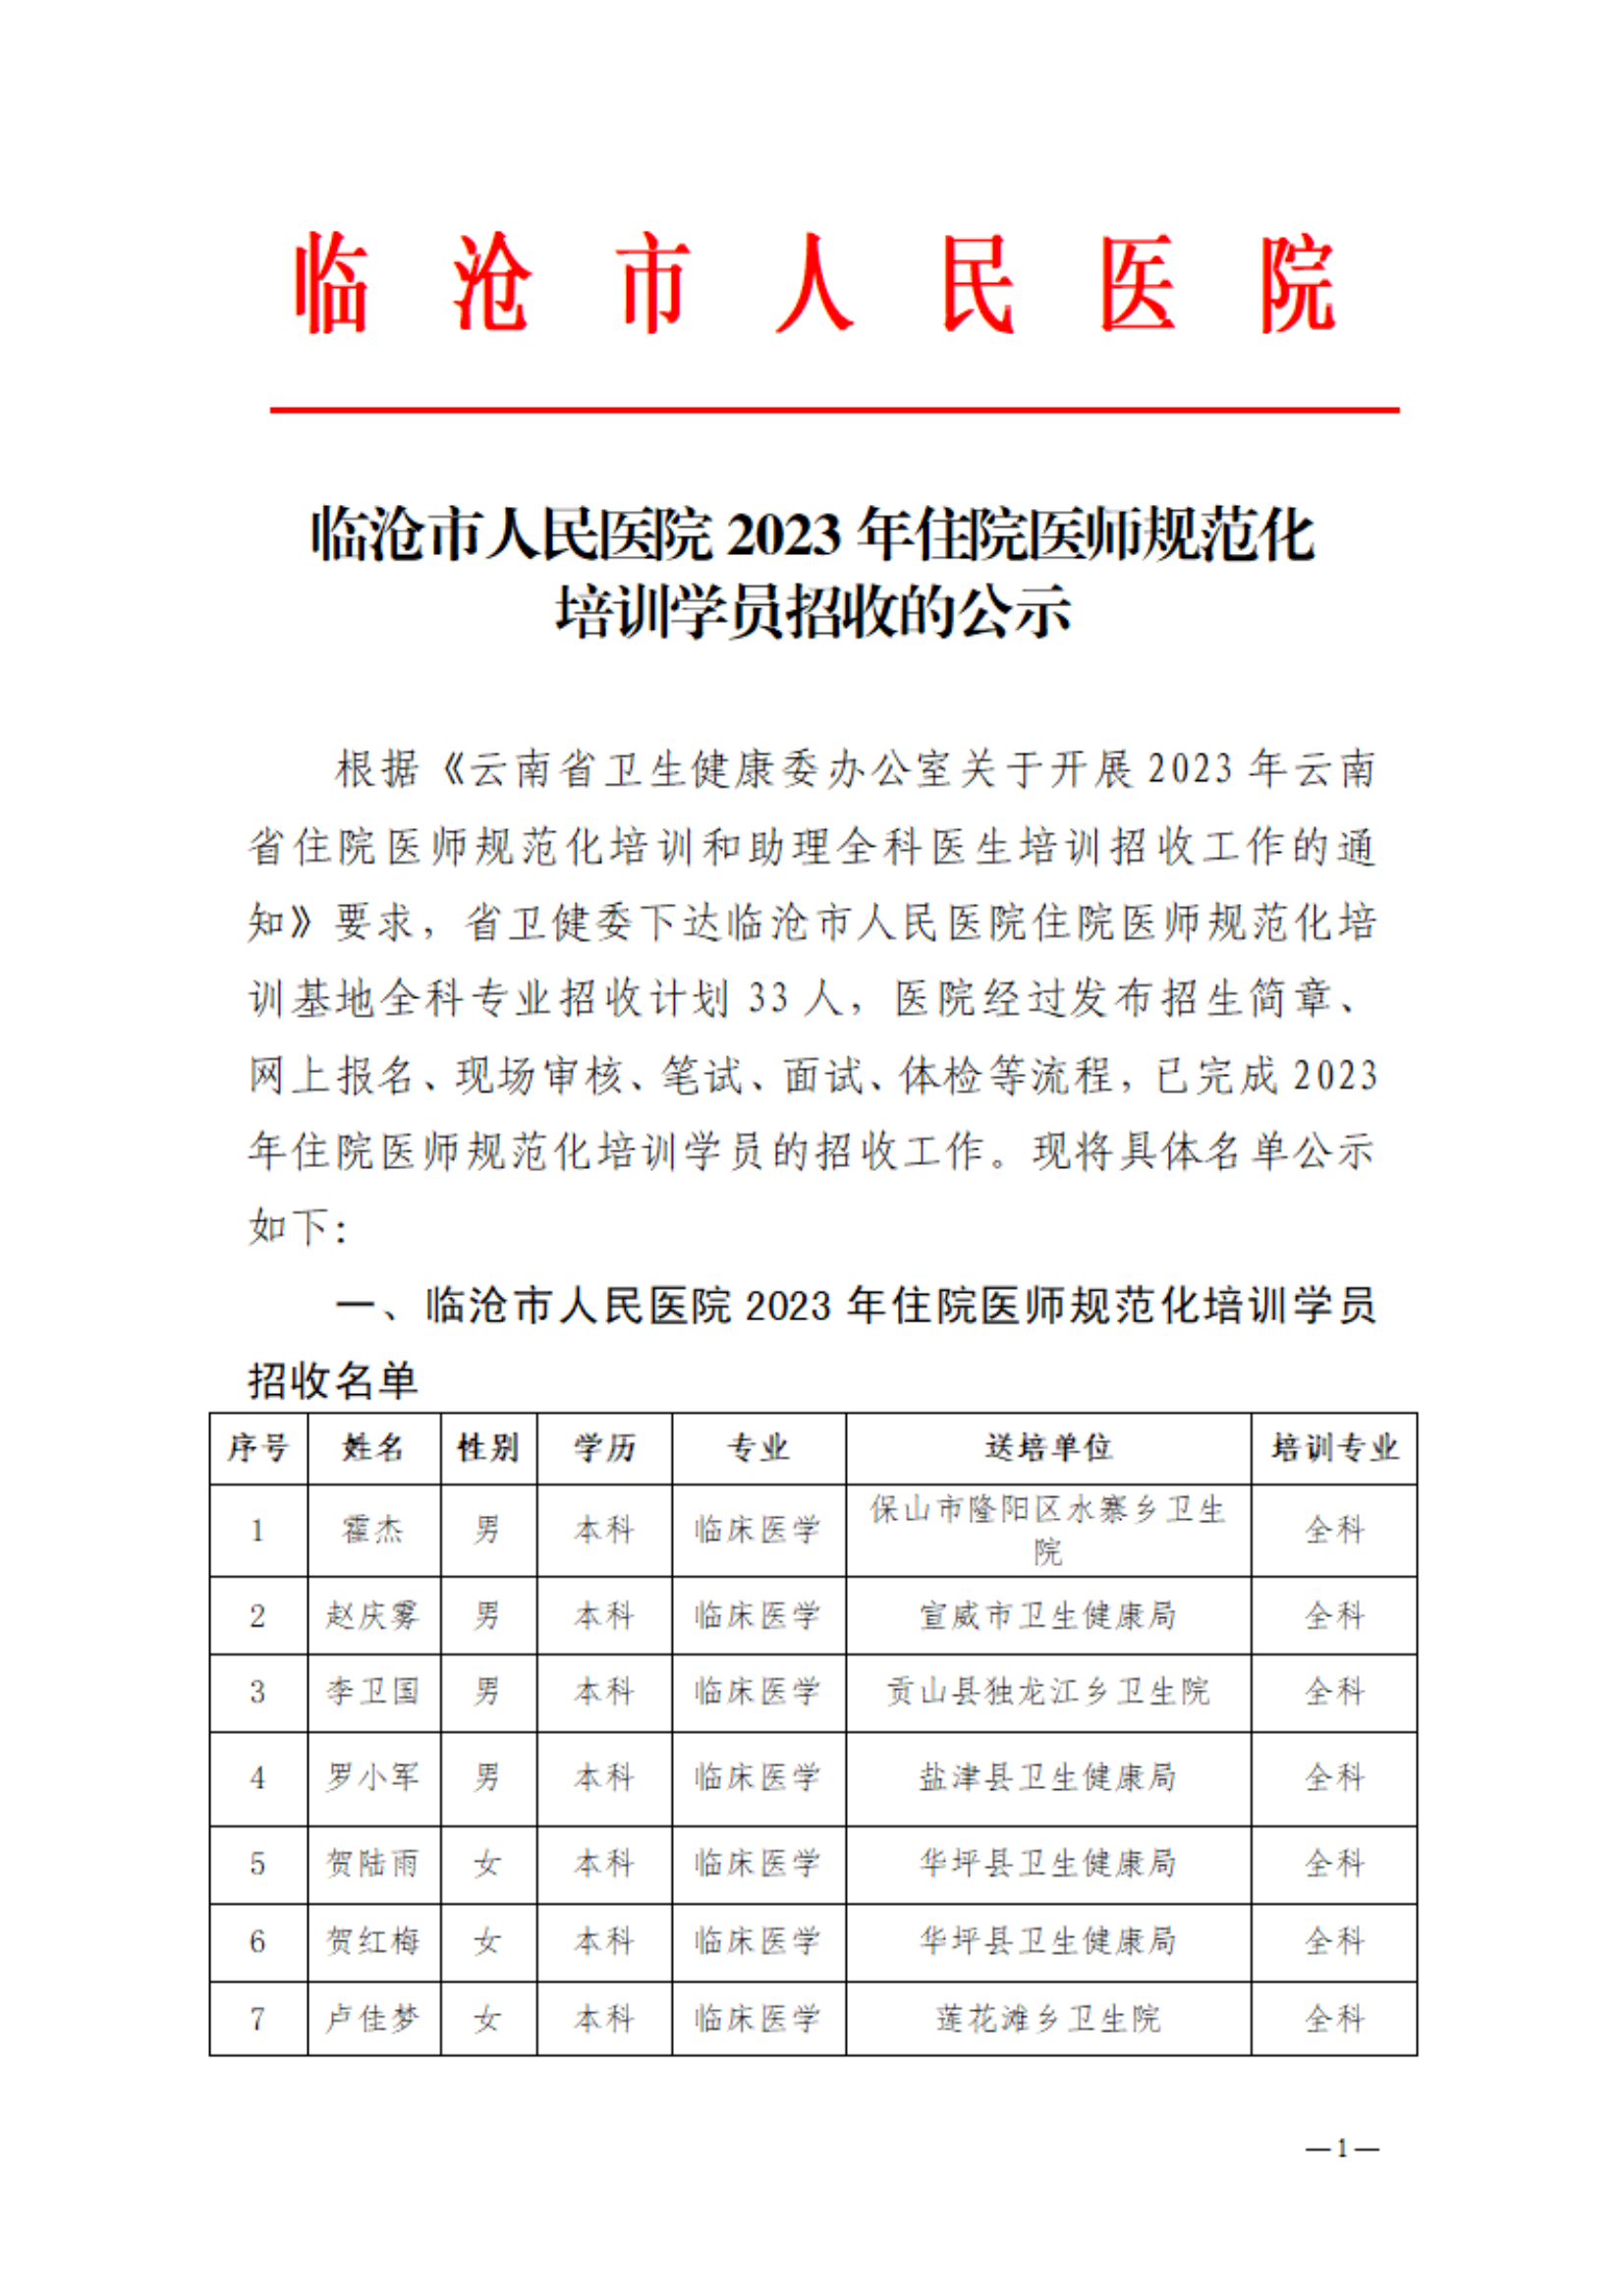 临沧市人民医院2023年住院医师规范化 培训学员招收的公示